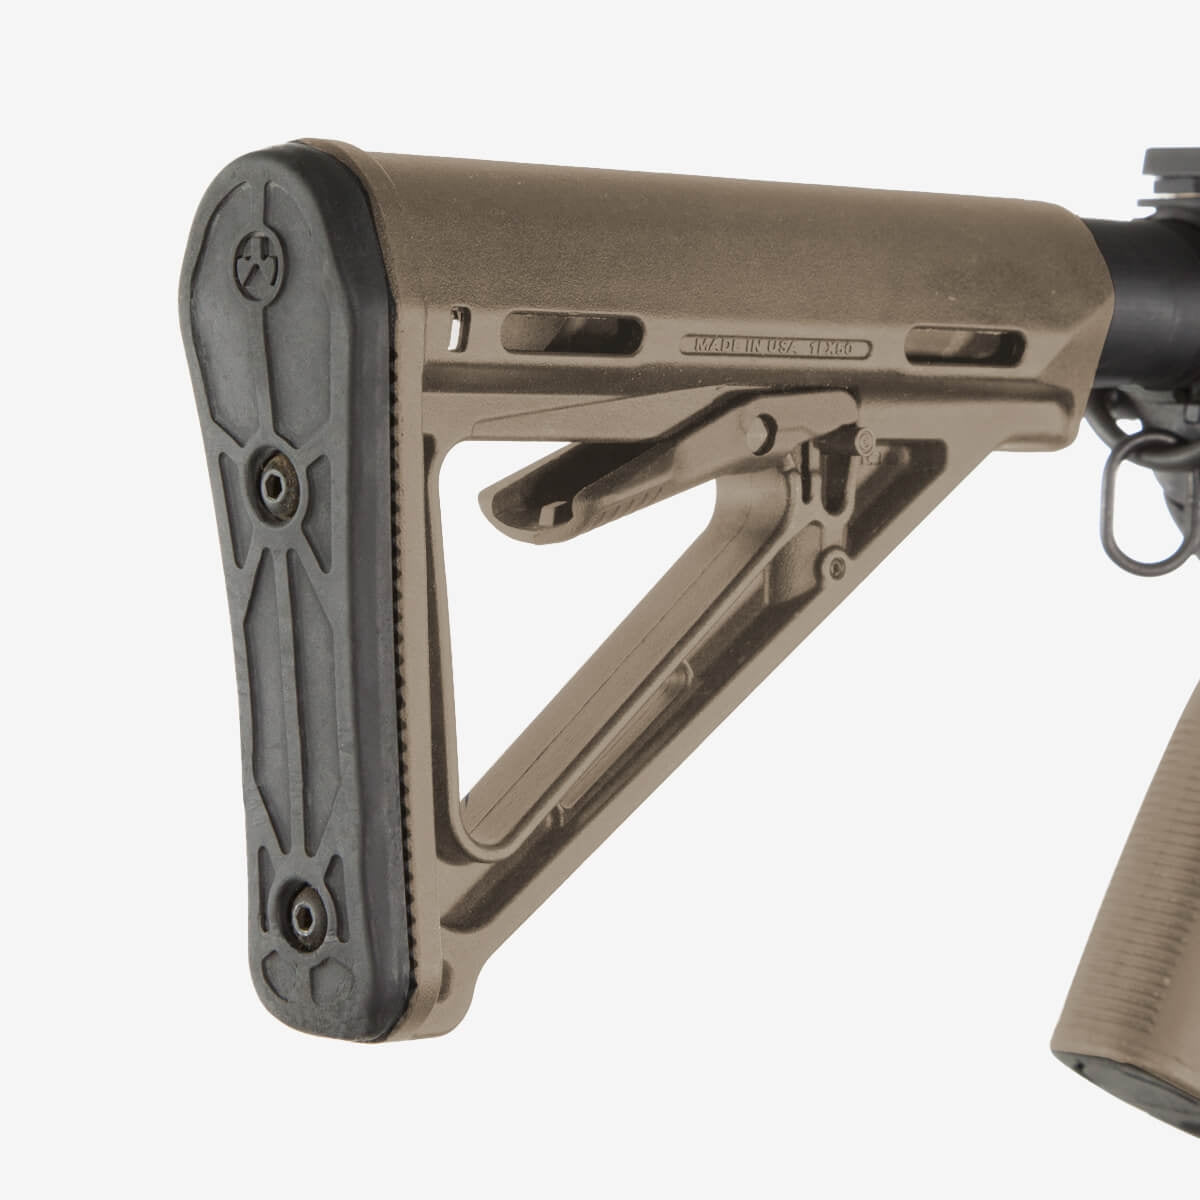 Magpul MOE Carbine Stock – Mil-Spec FDE